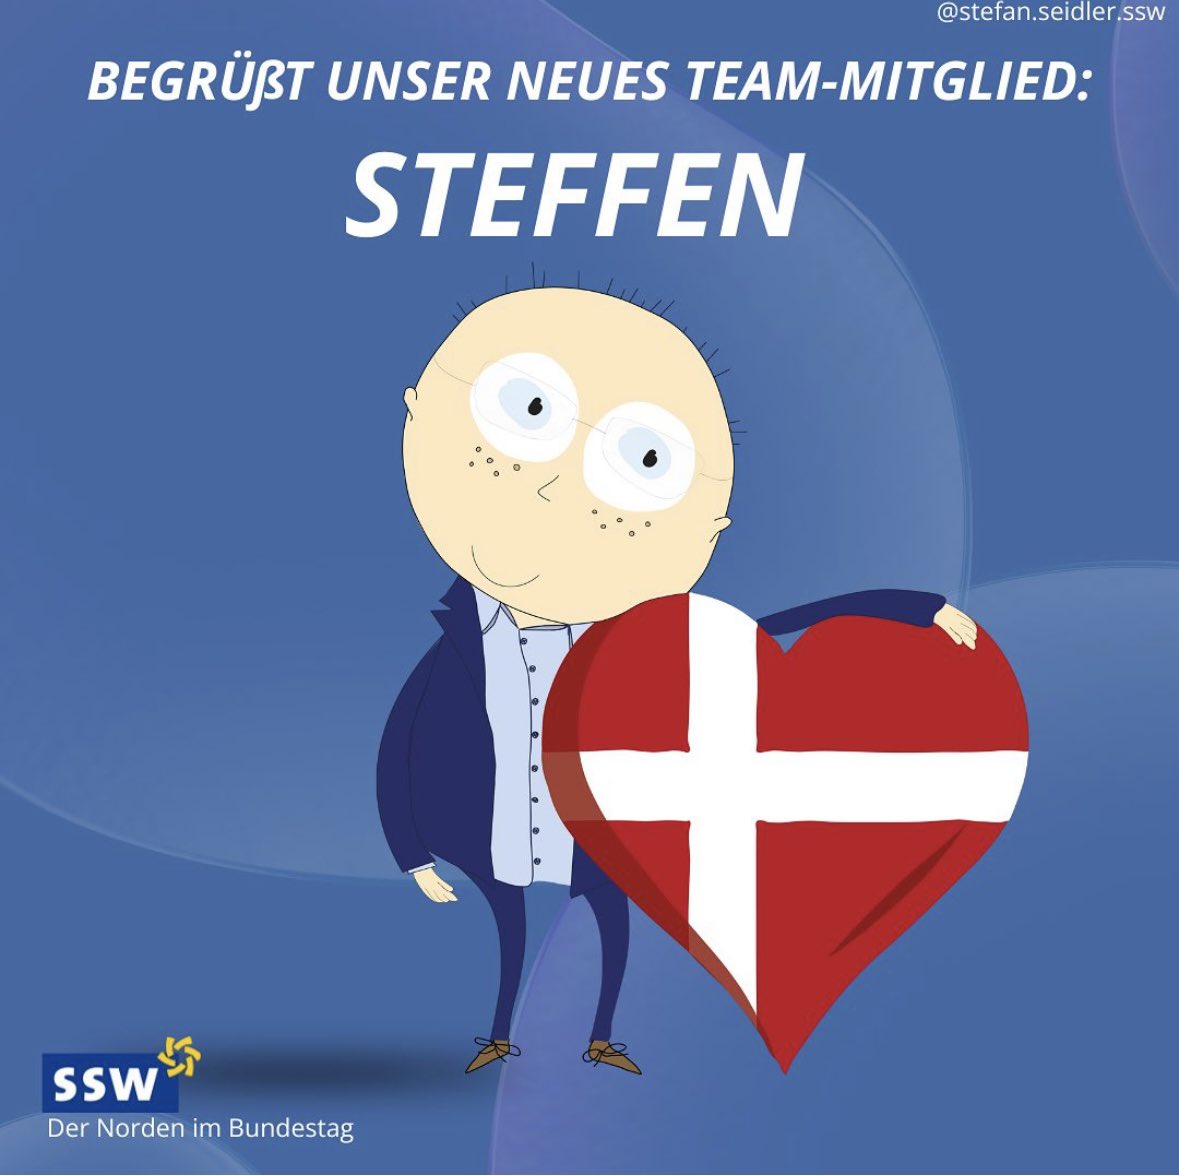 #Moin Steffen! Unser neuestes Teammitglied im Team Seidler ist der #Steffen. Den werdet ihr hier in der kommenden Zeit auch öfter hier erleben. Sicher wird er unserem Stefan auch noch ein paar Nerven kosten 😉 … ligner han ikke en eller anden?🤔